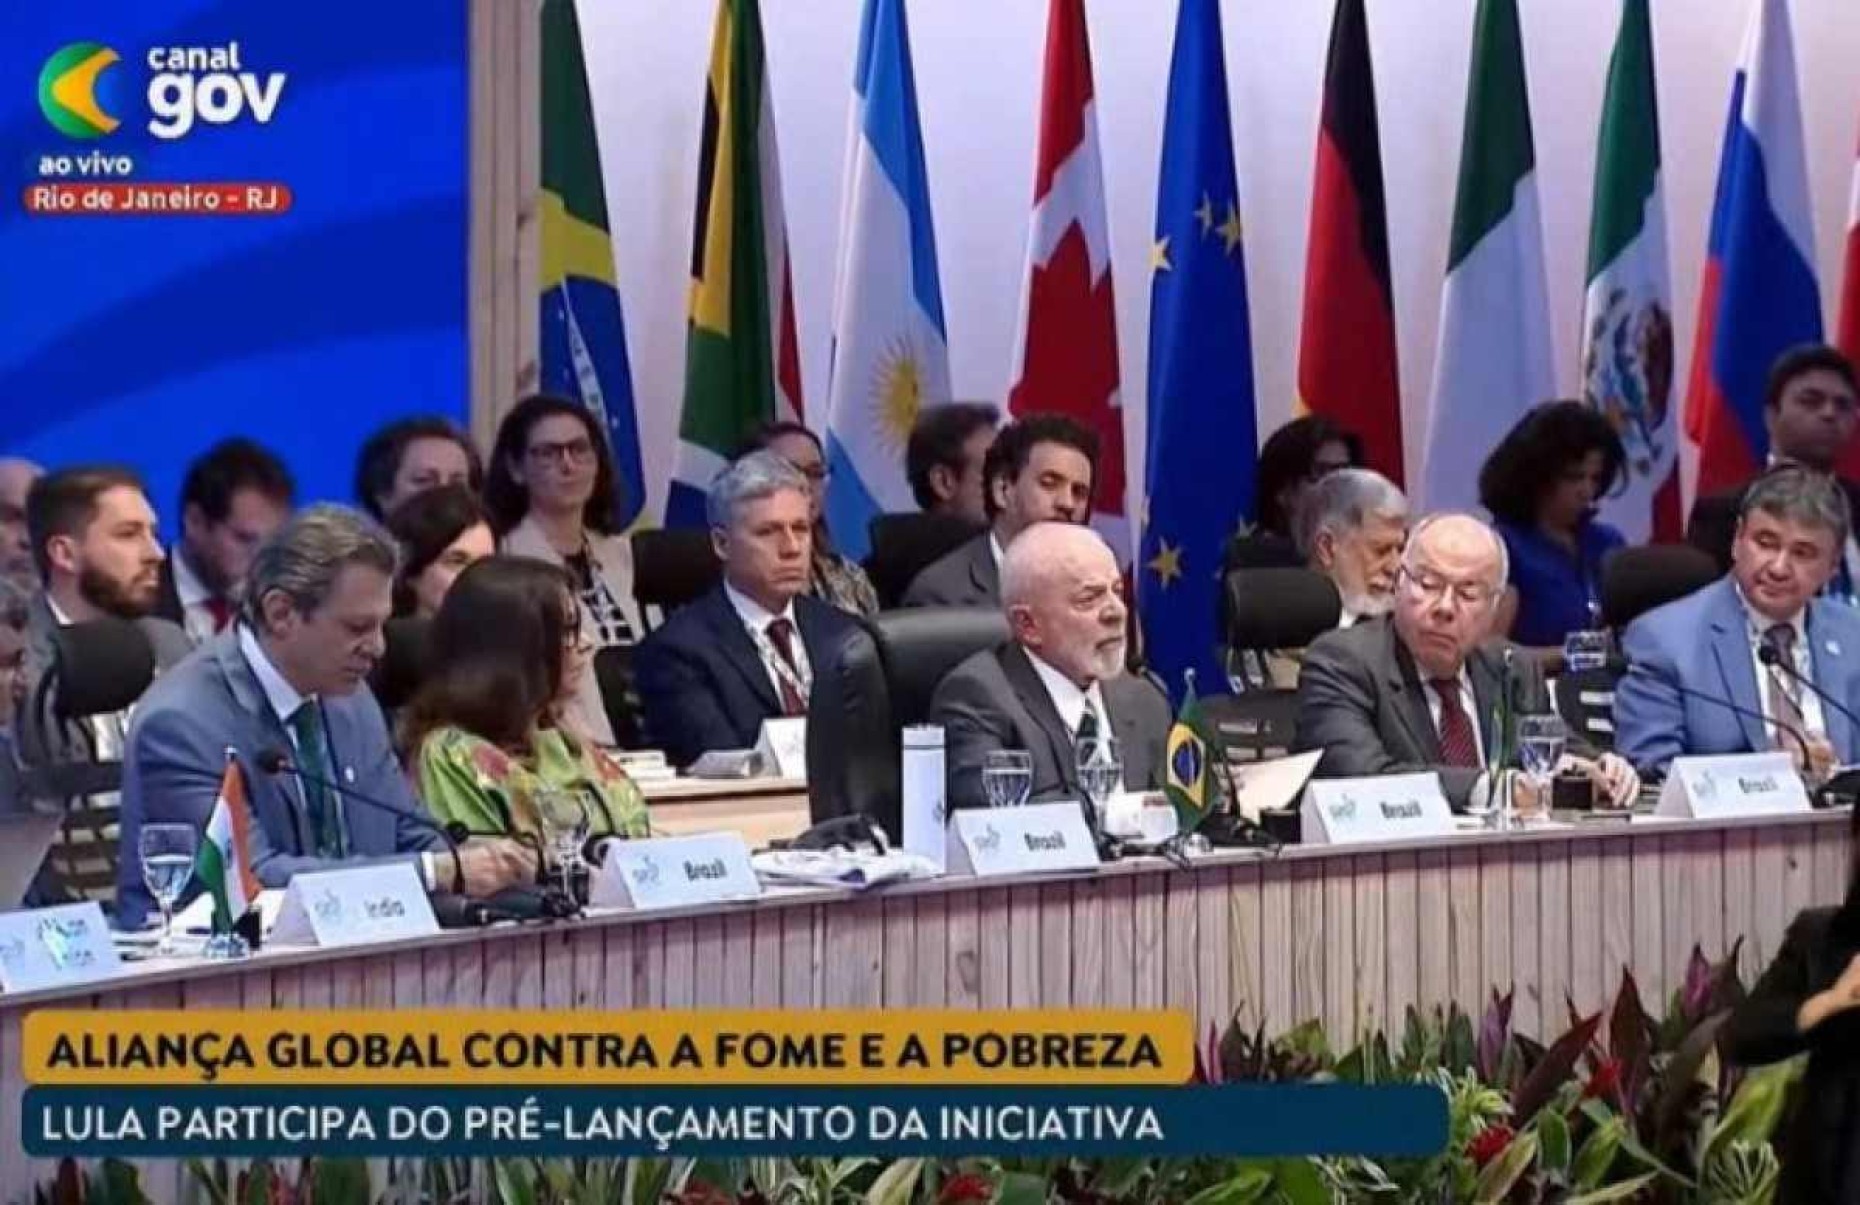 Aliança contra Fome usará fundos já existentes, garante Lula ao G20